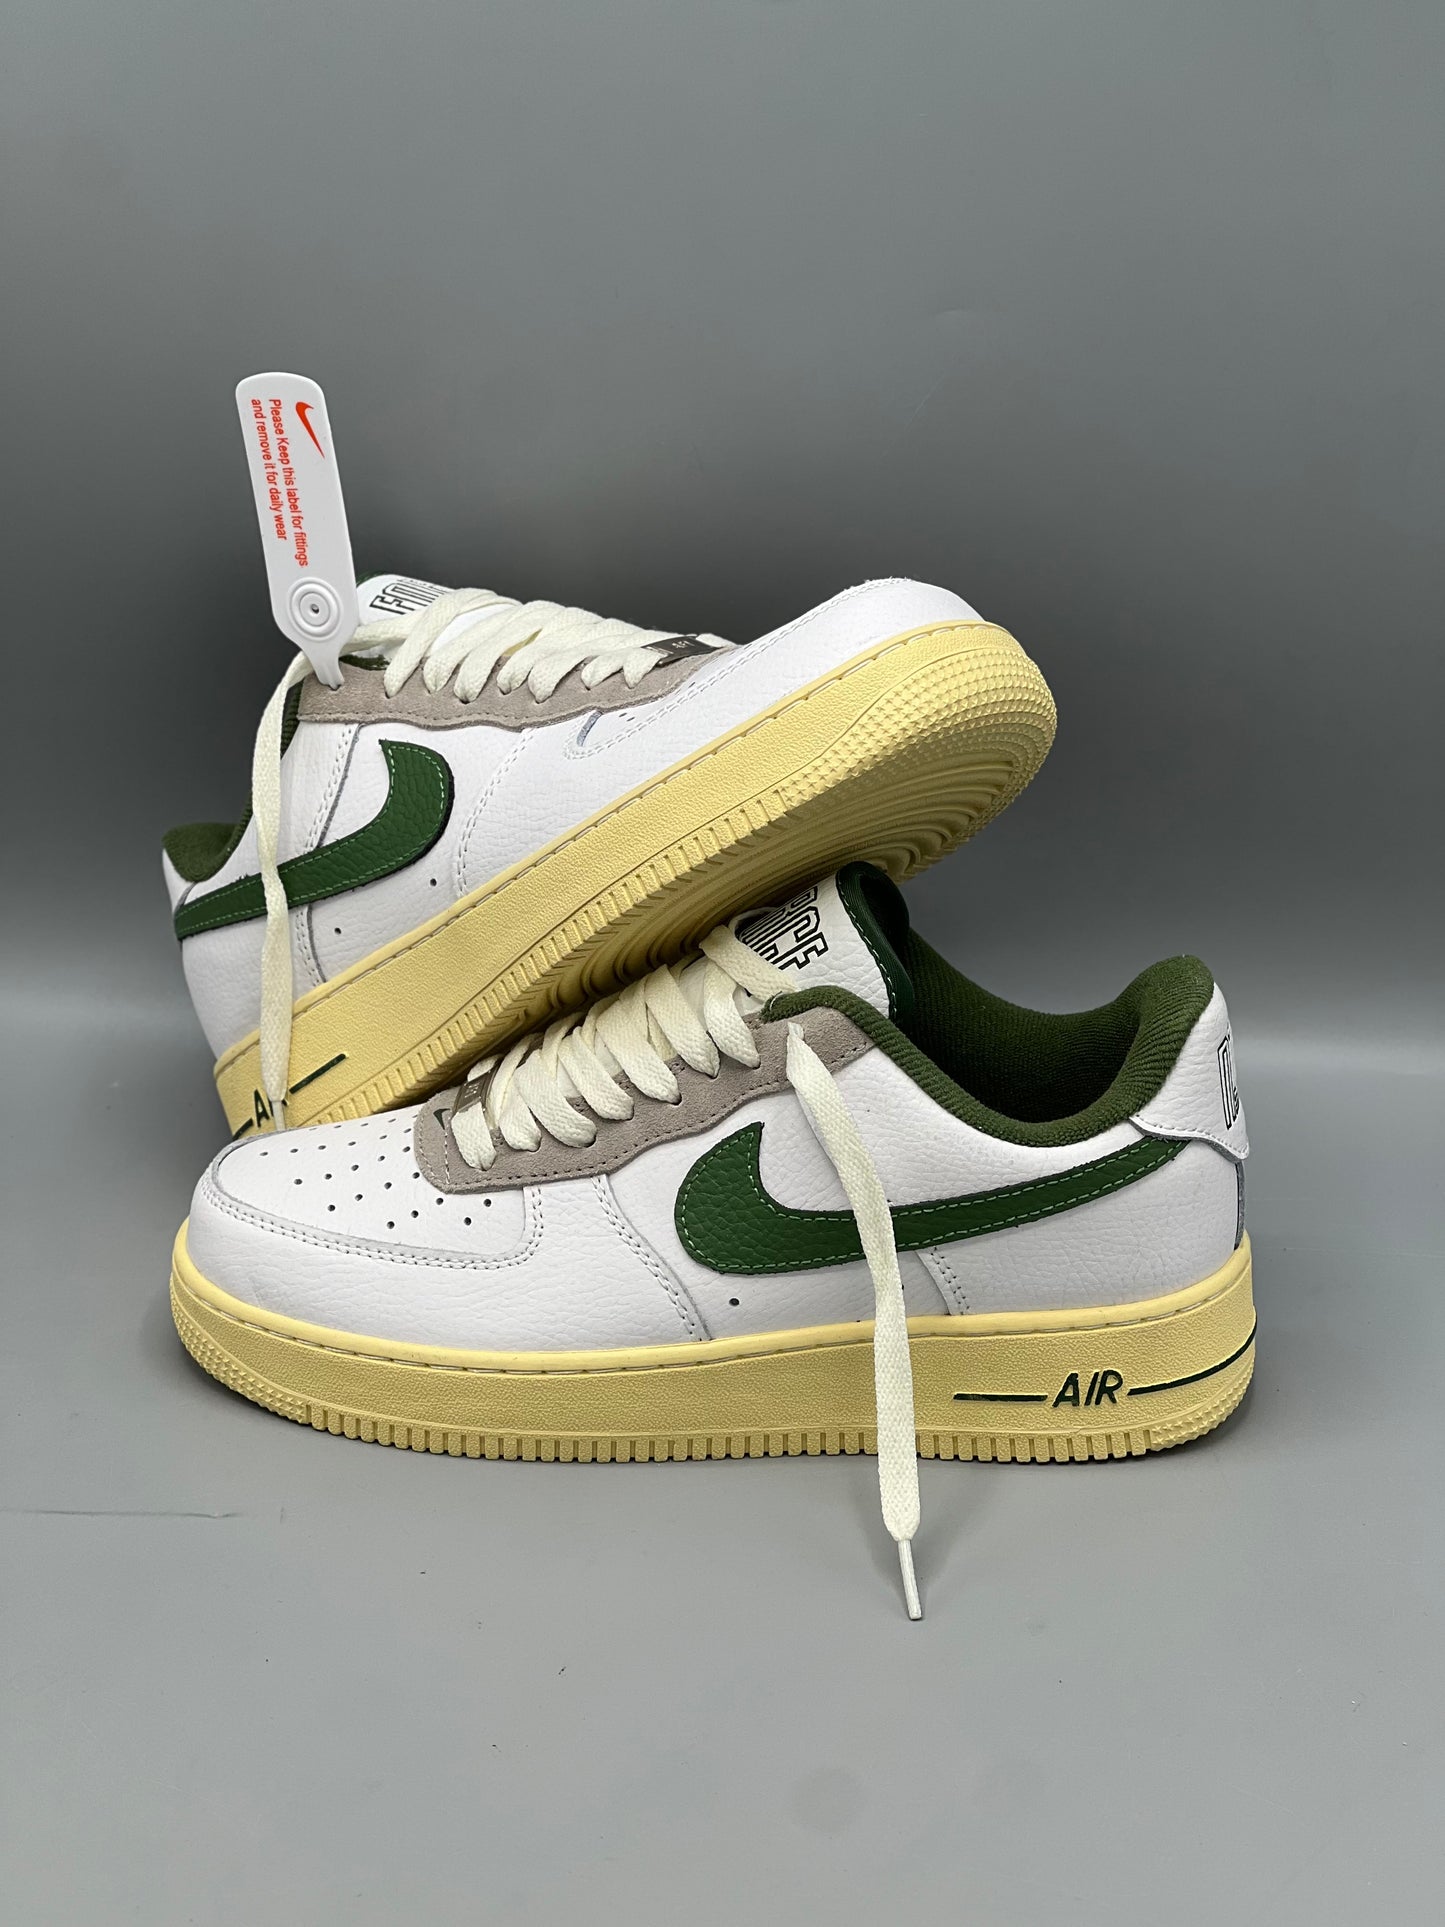 Nike Air force one